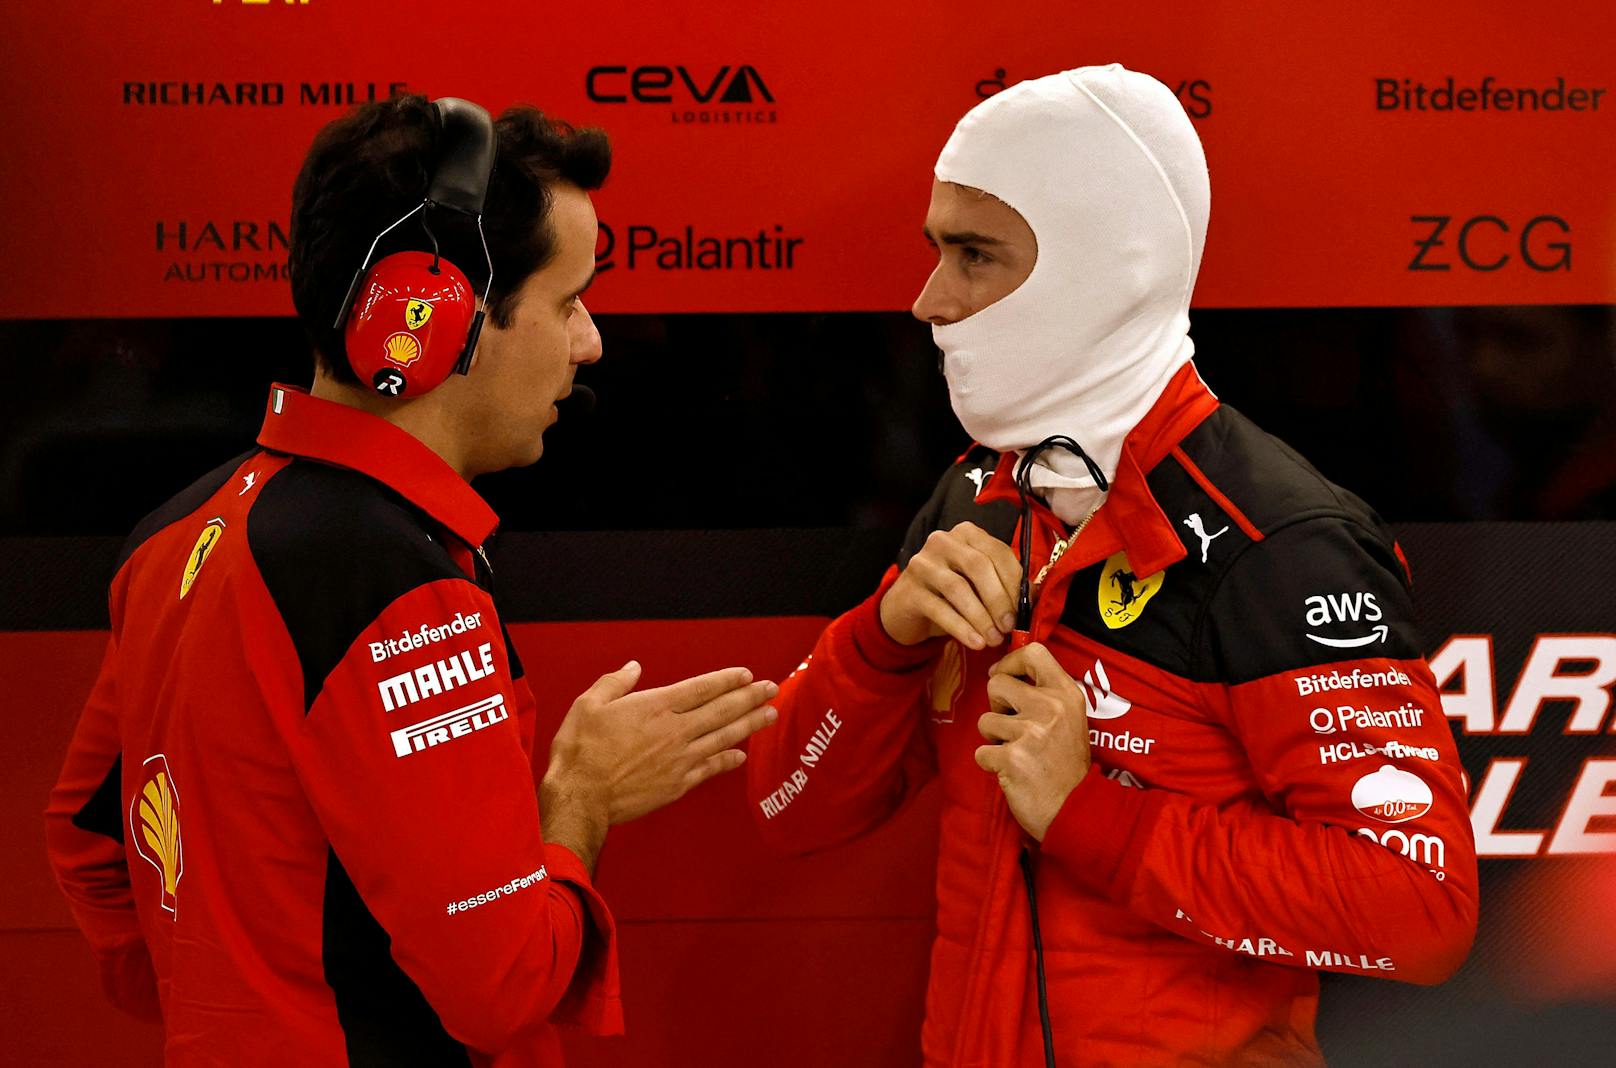 "Viel zu spät!" Leclerc watscht Ferrari-Ingenieur ab